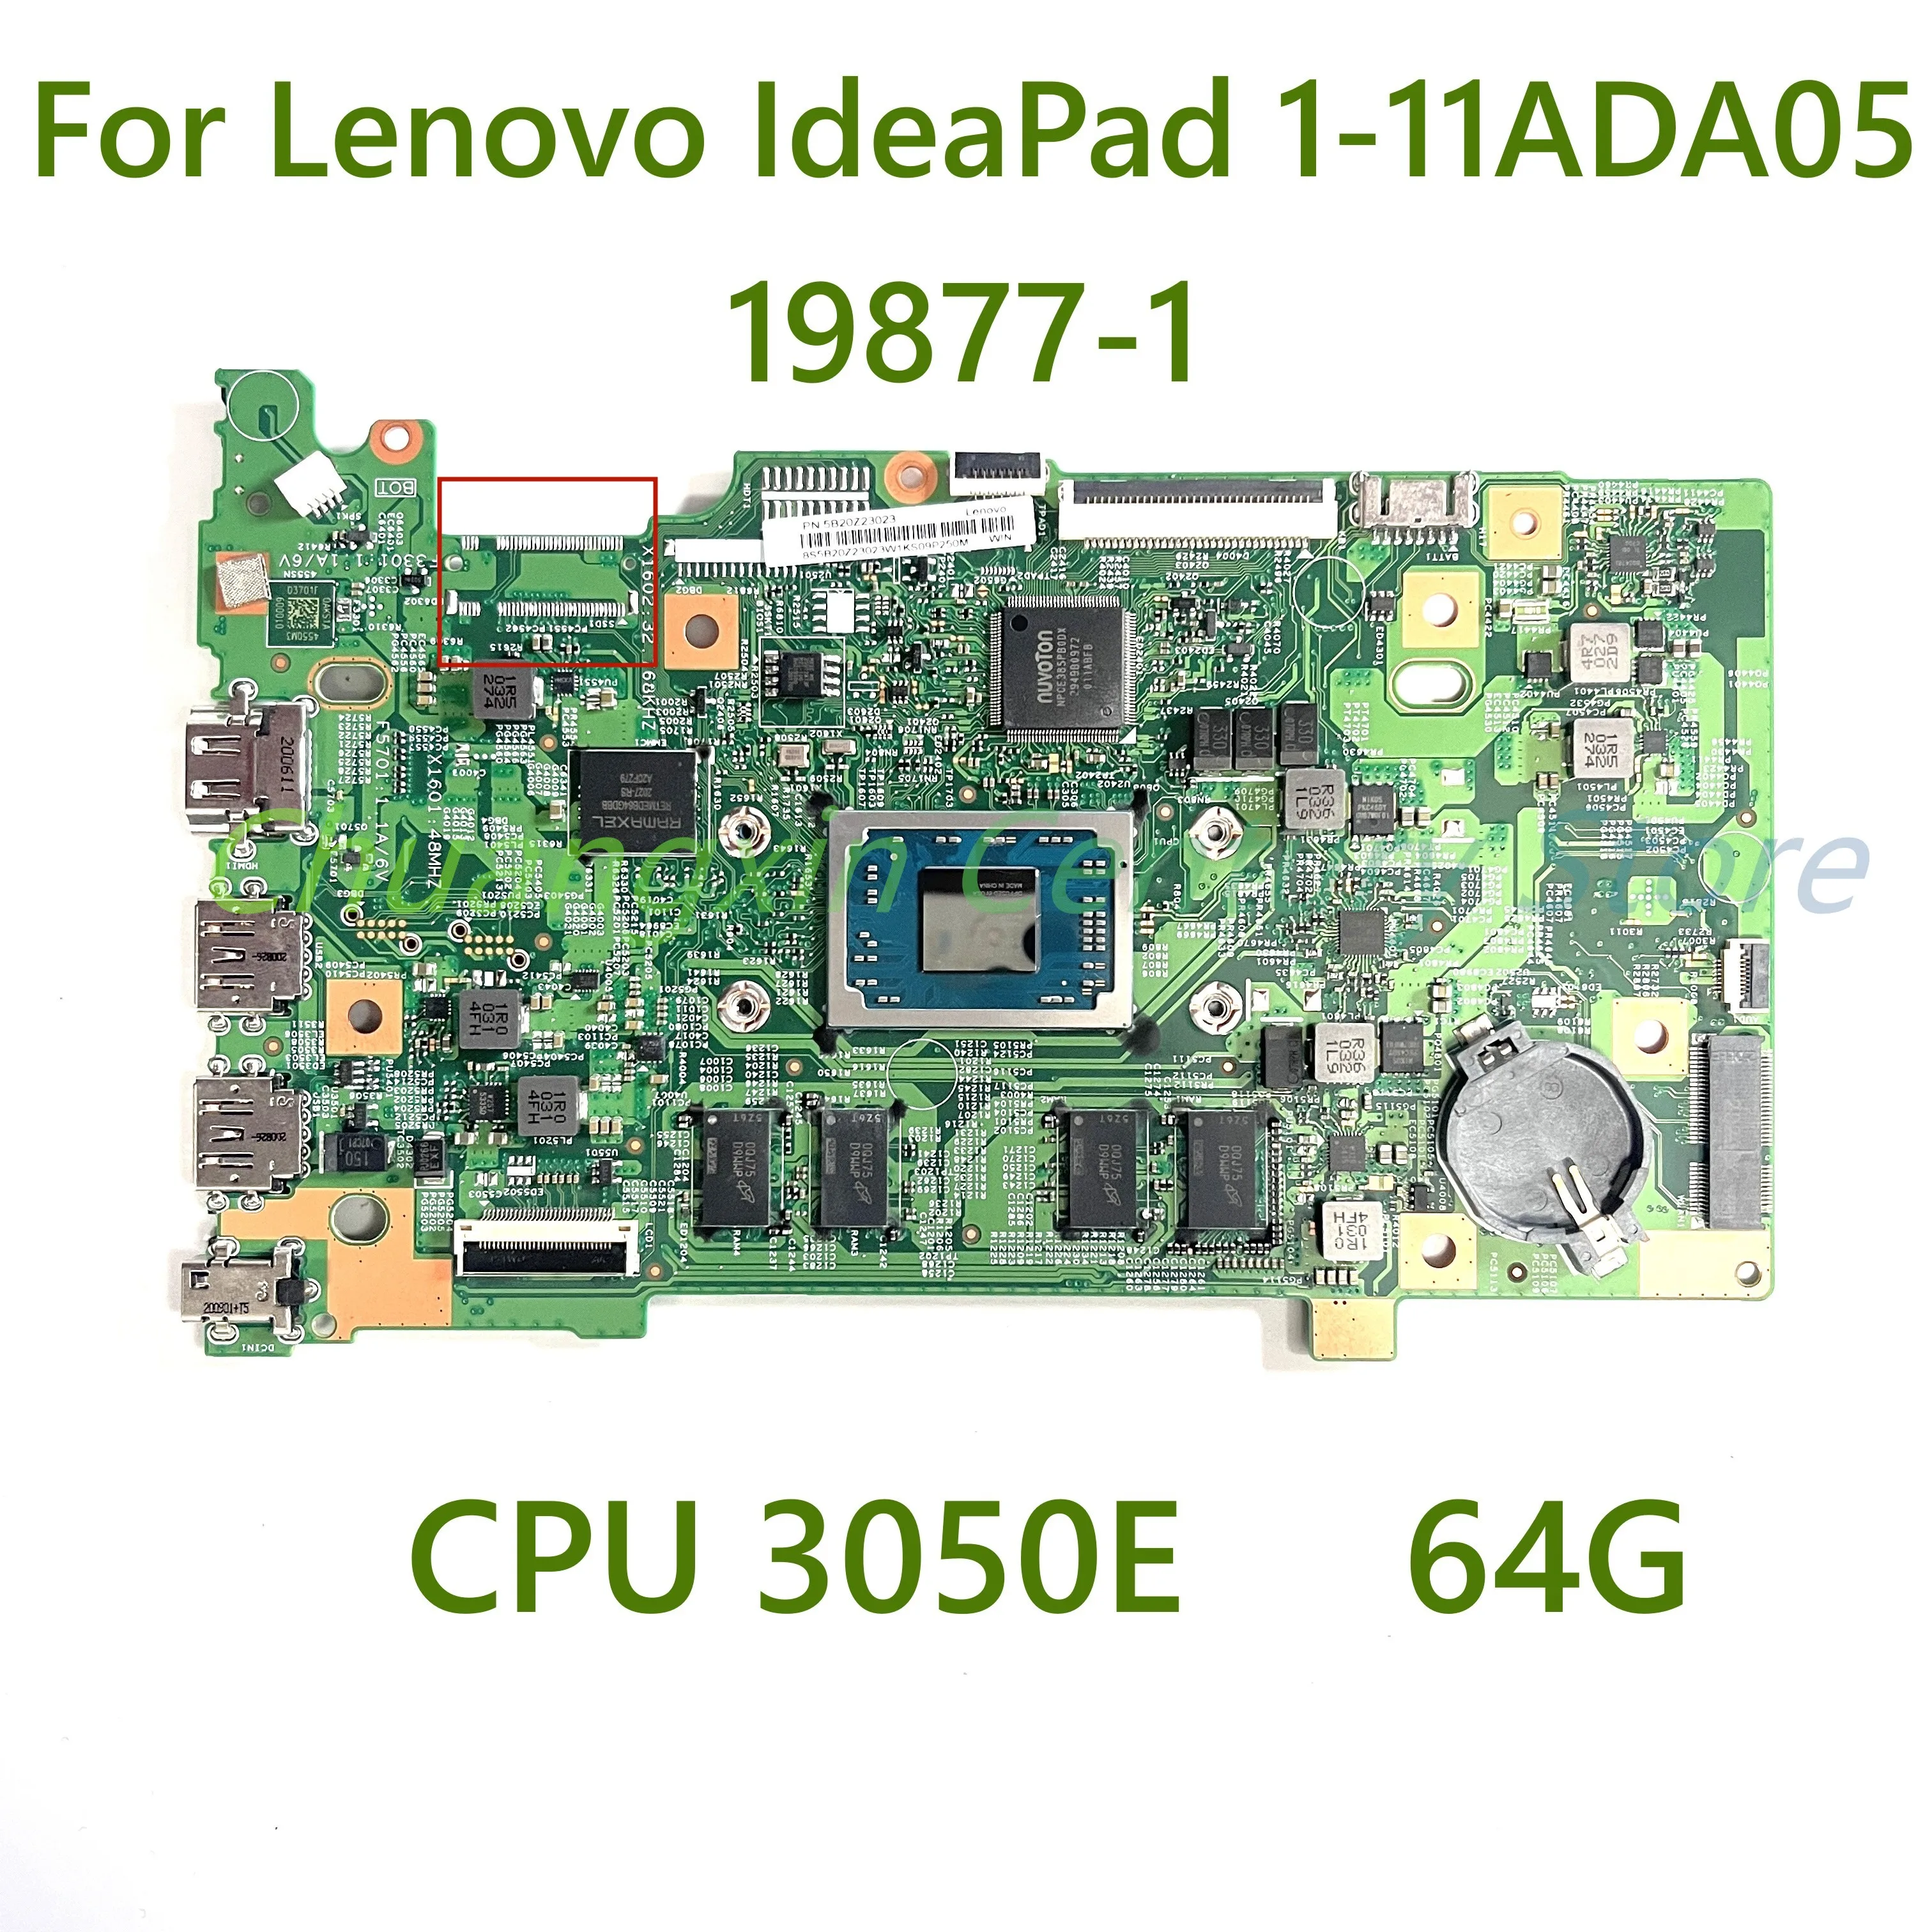 Pro Lenovo IdeaPad 1-11ADA05 Notebooku základní deska 19877-1 s CPU 3050E 64G 100% Testovány Plně Fungovat